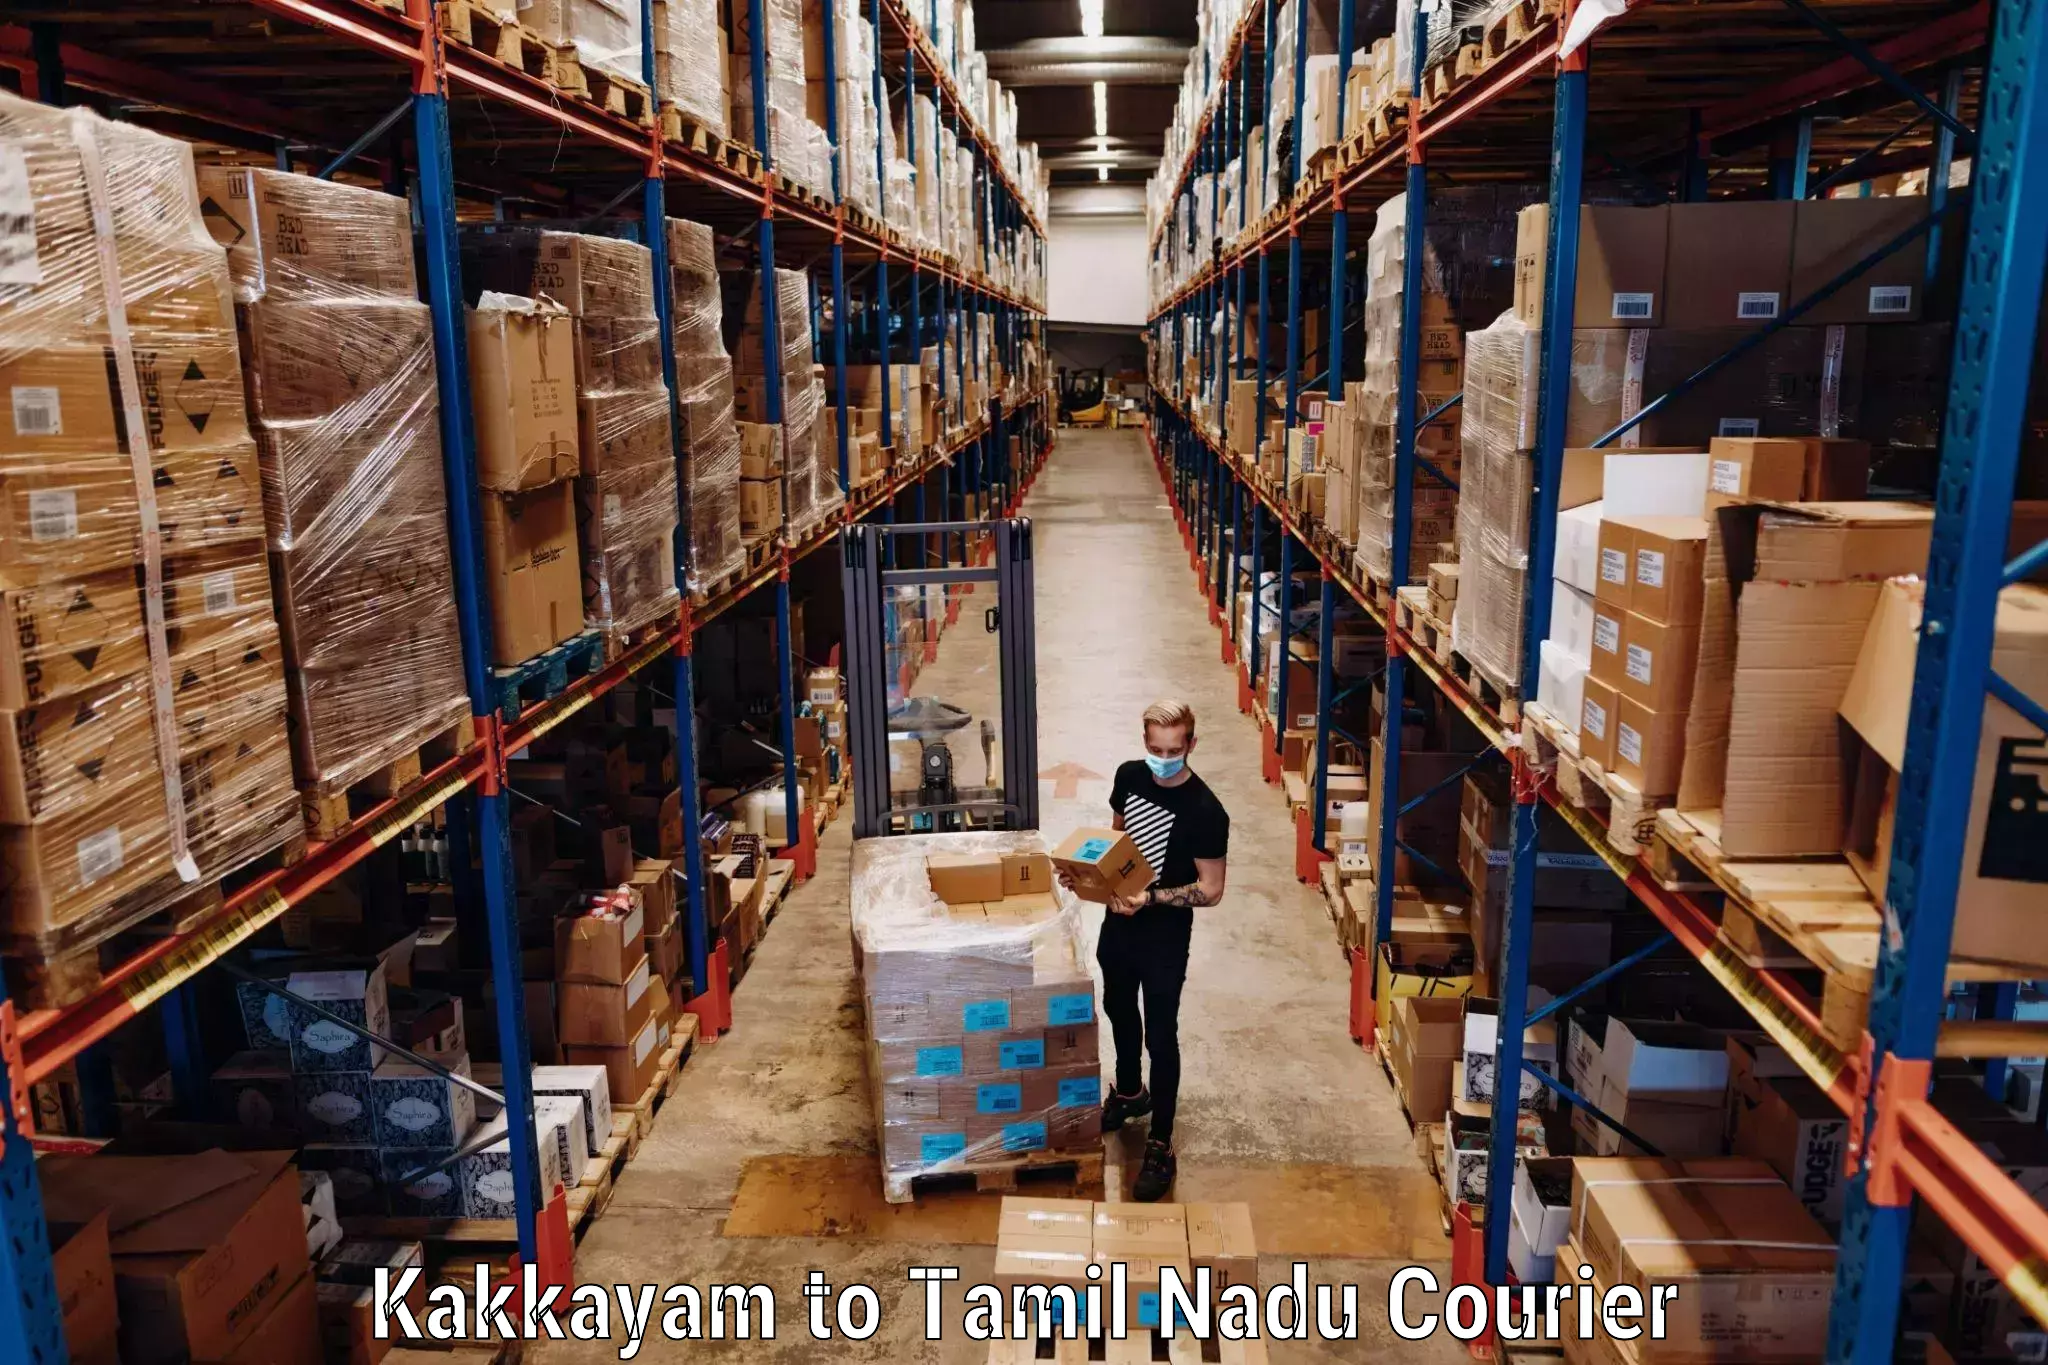 Luggage transport deals Kakkayam to Manamelkudi